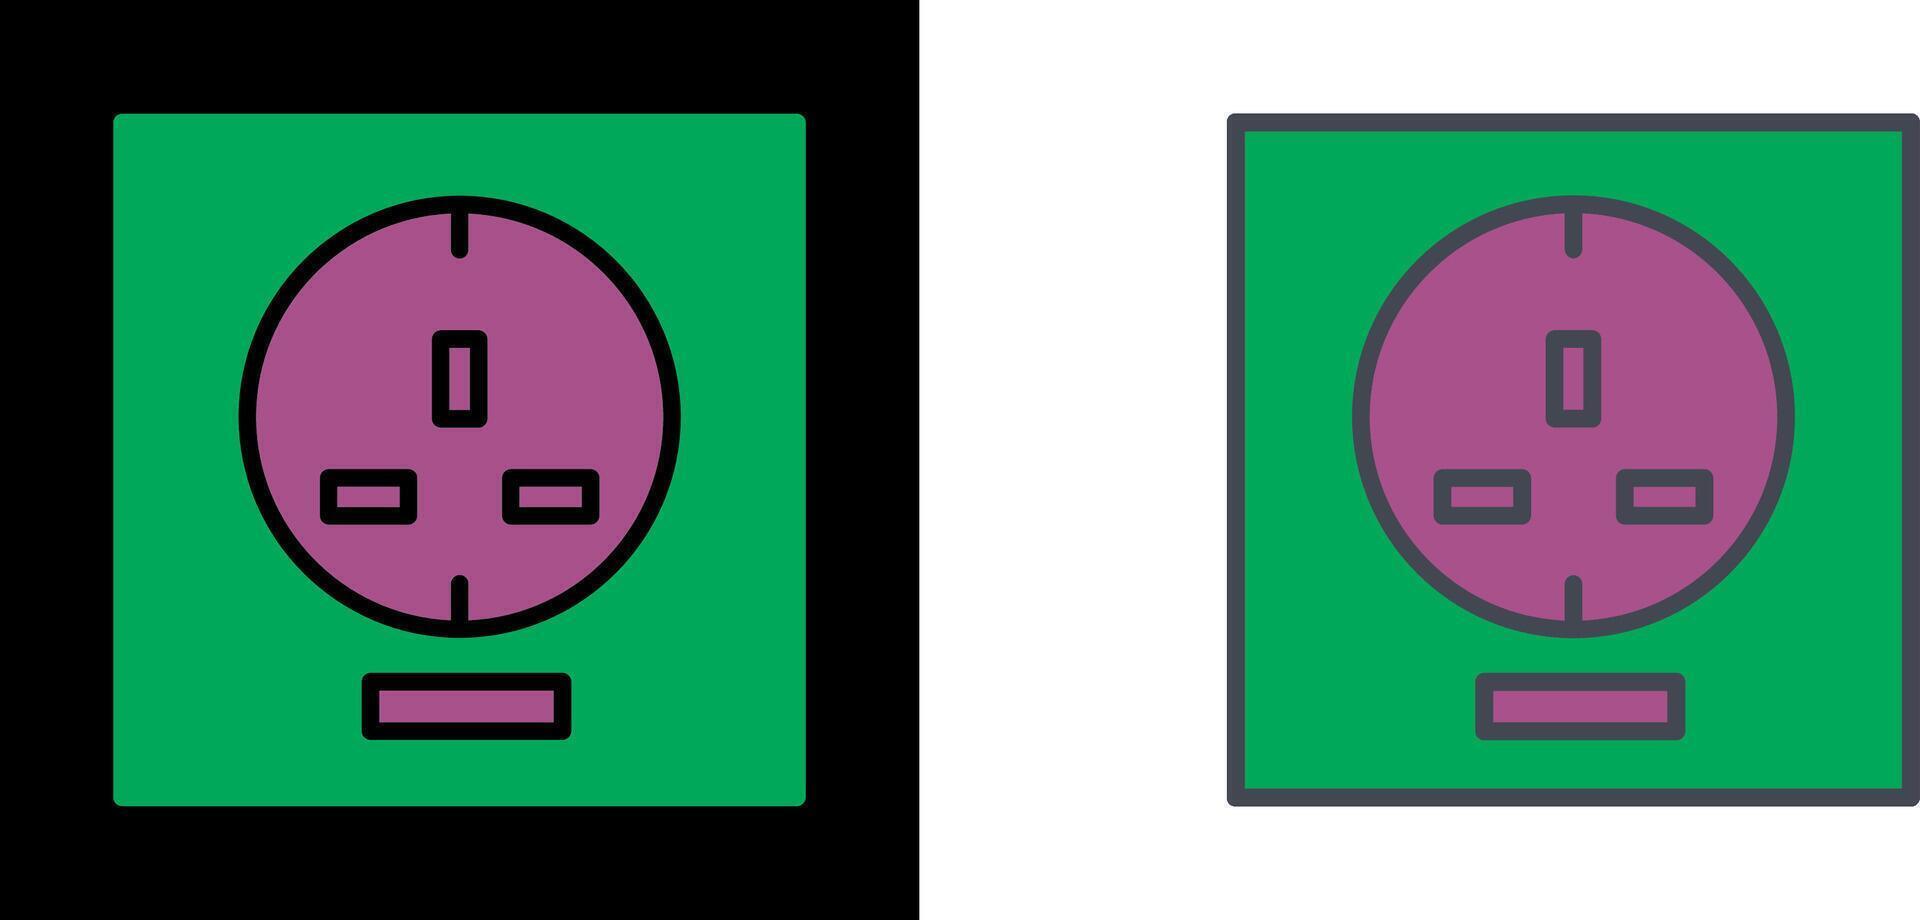 Socket Icon Design vector